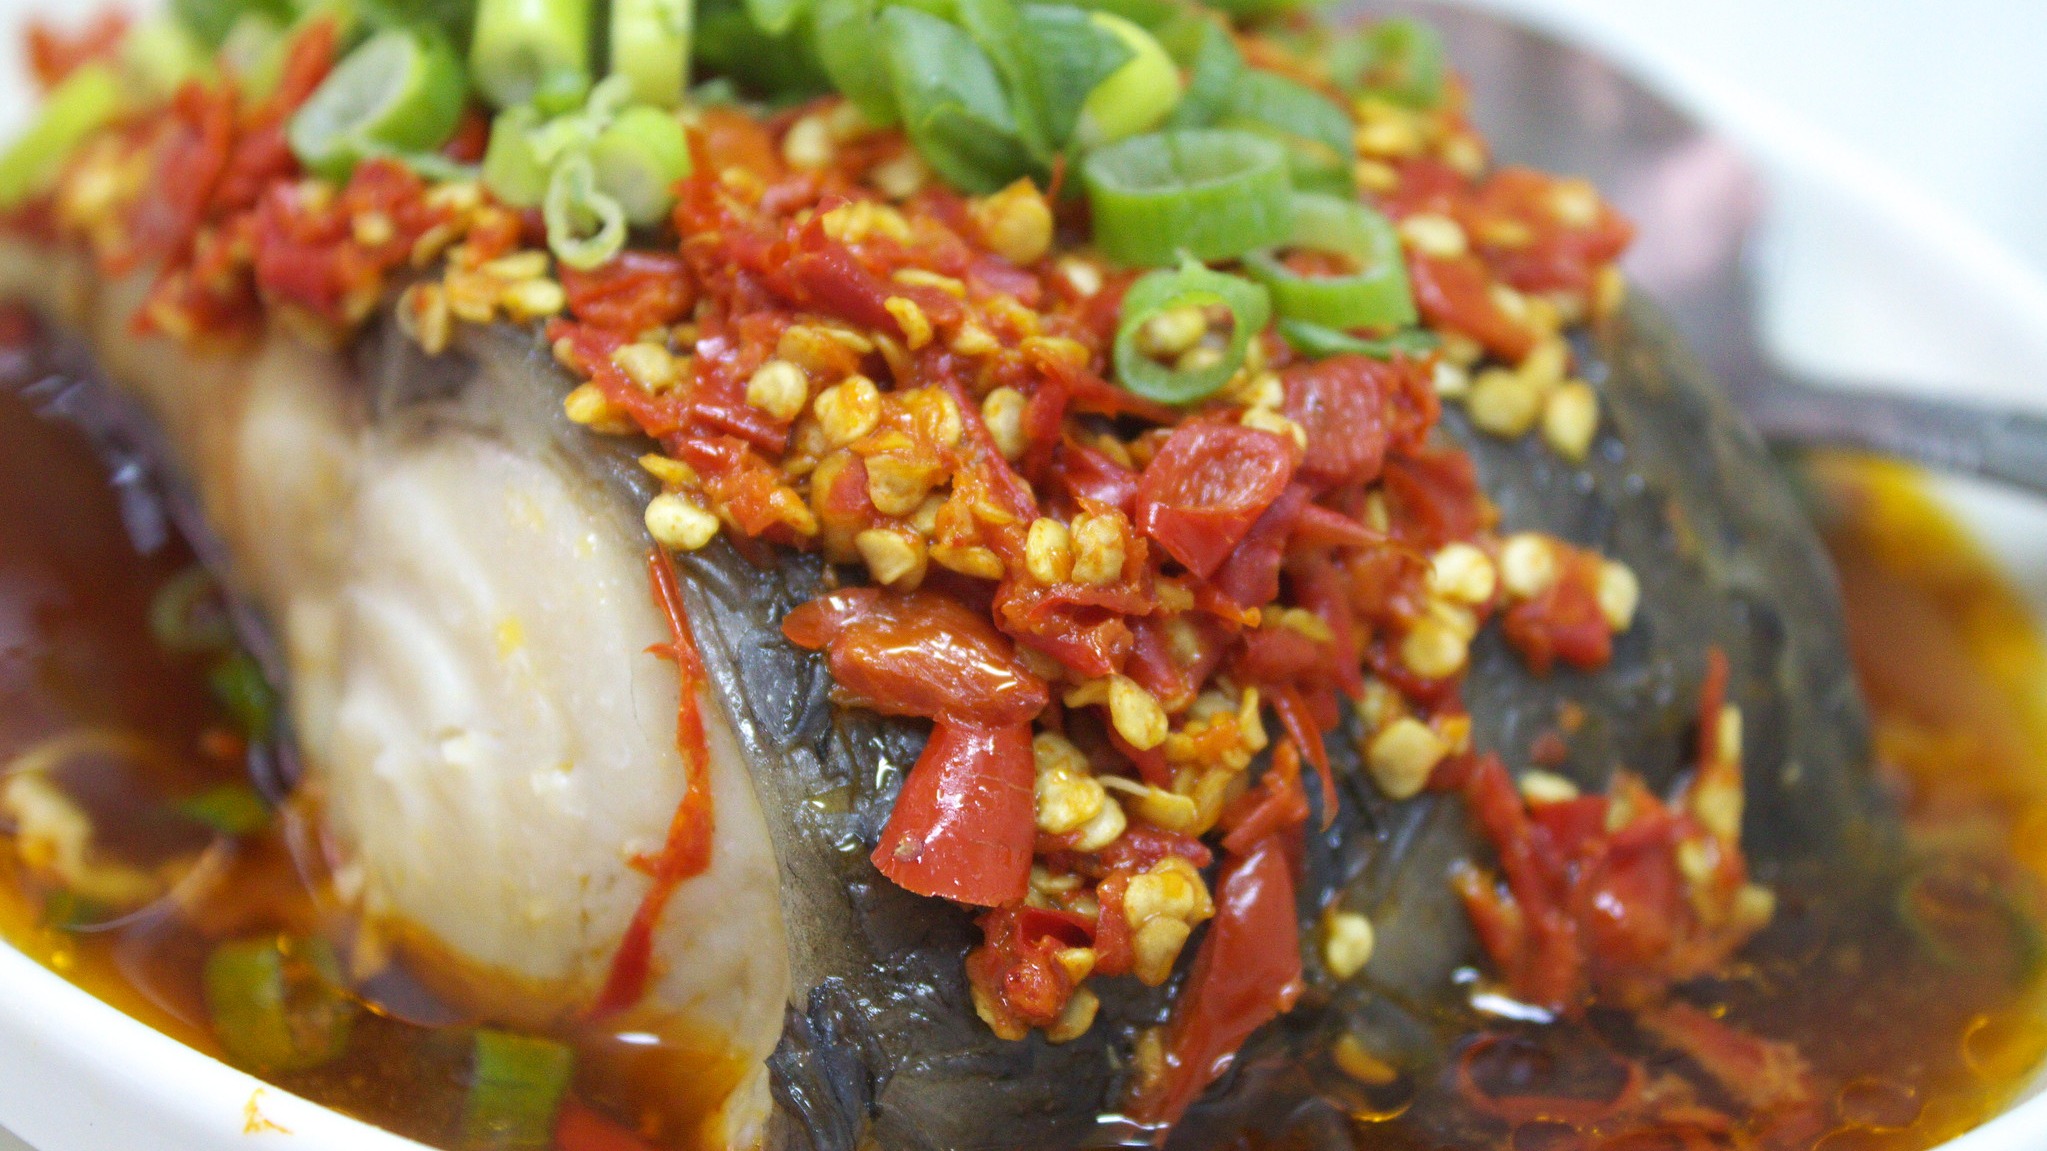 Hunan Food